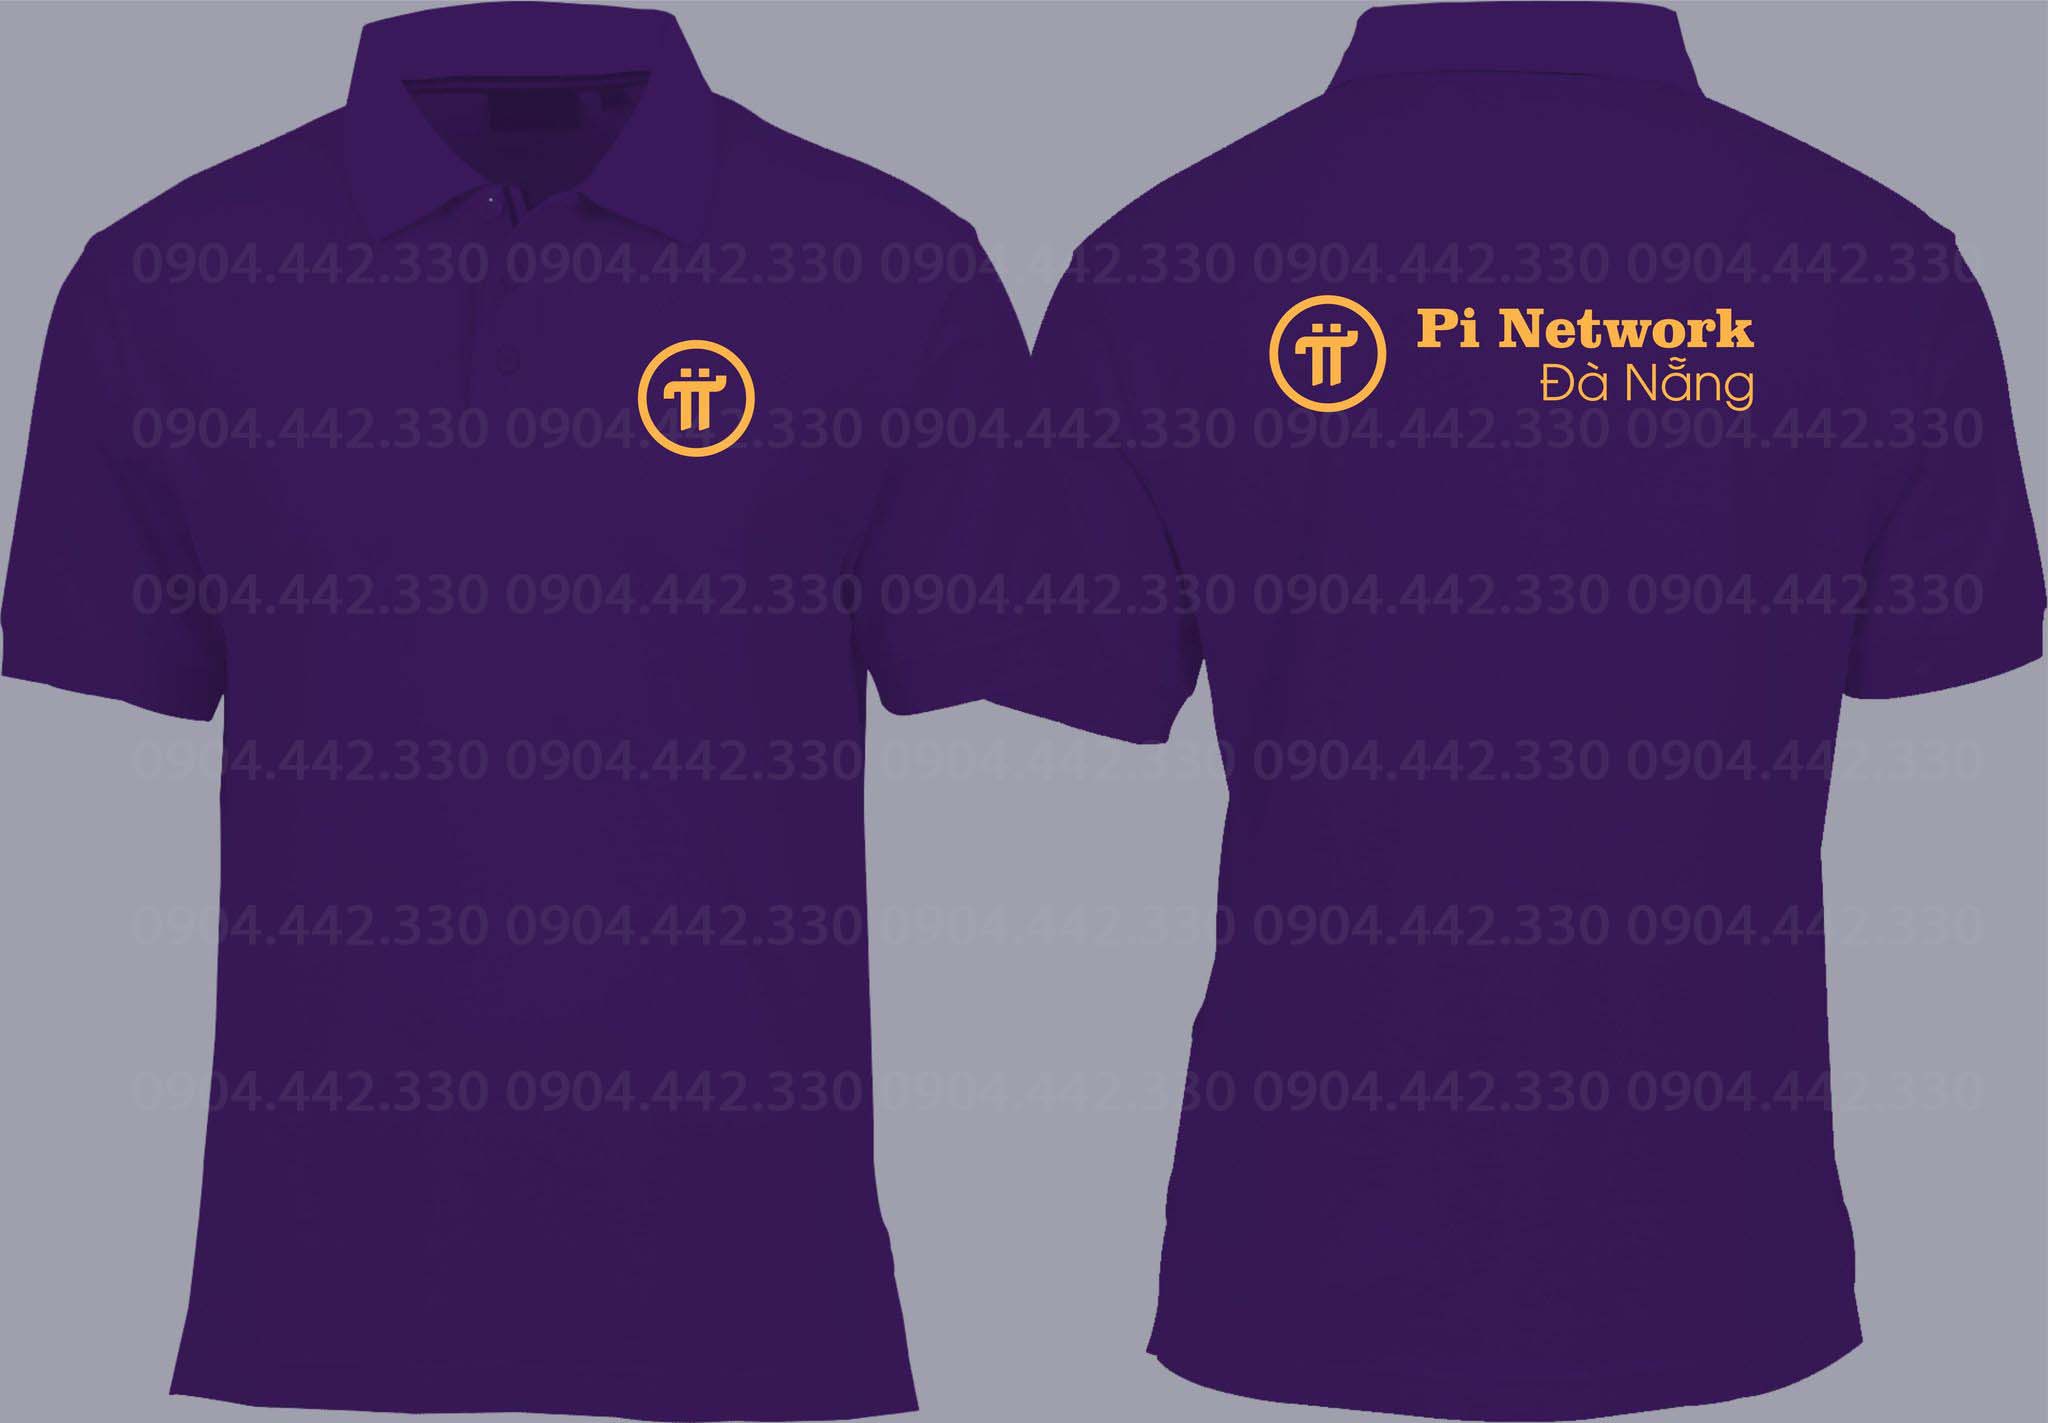 Pi Network Đà Nẵng